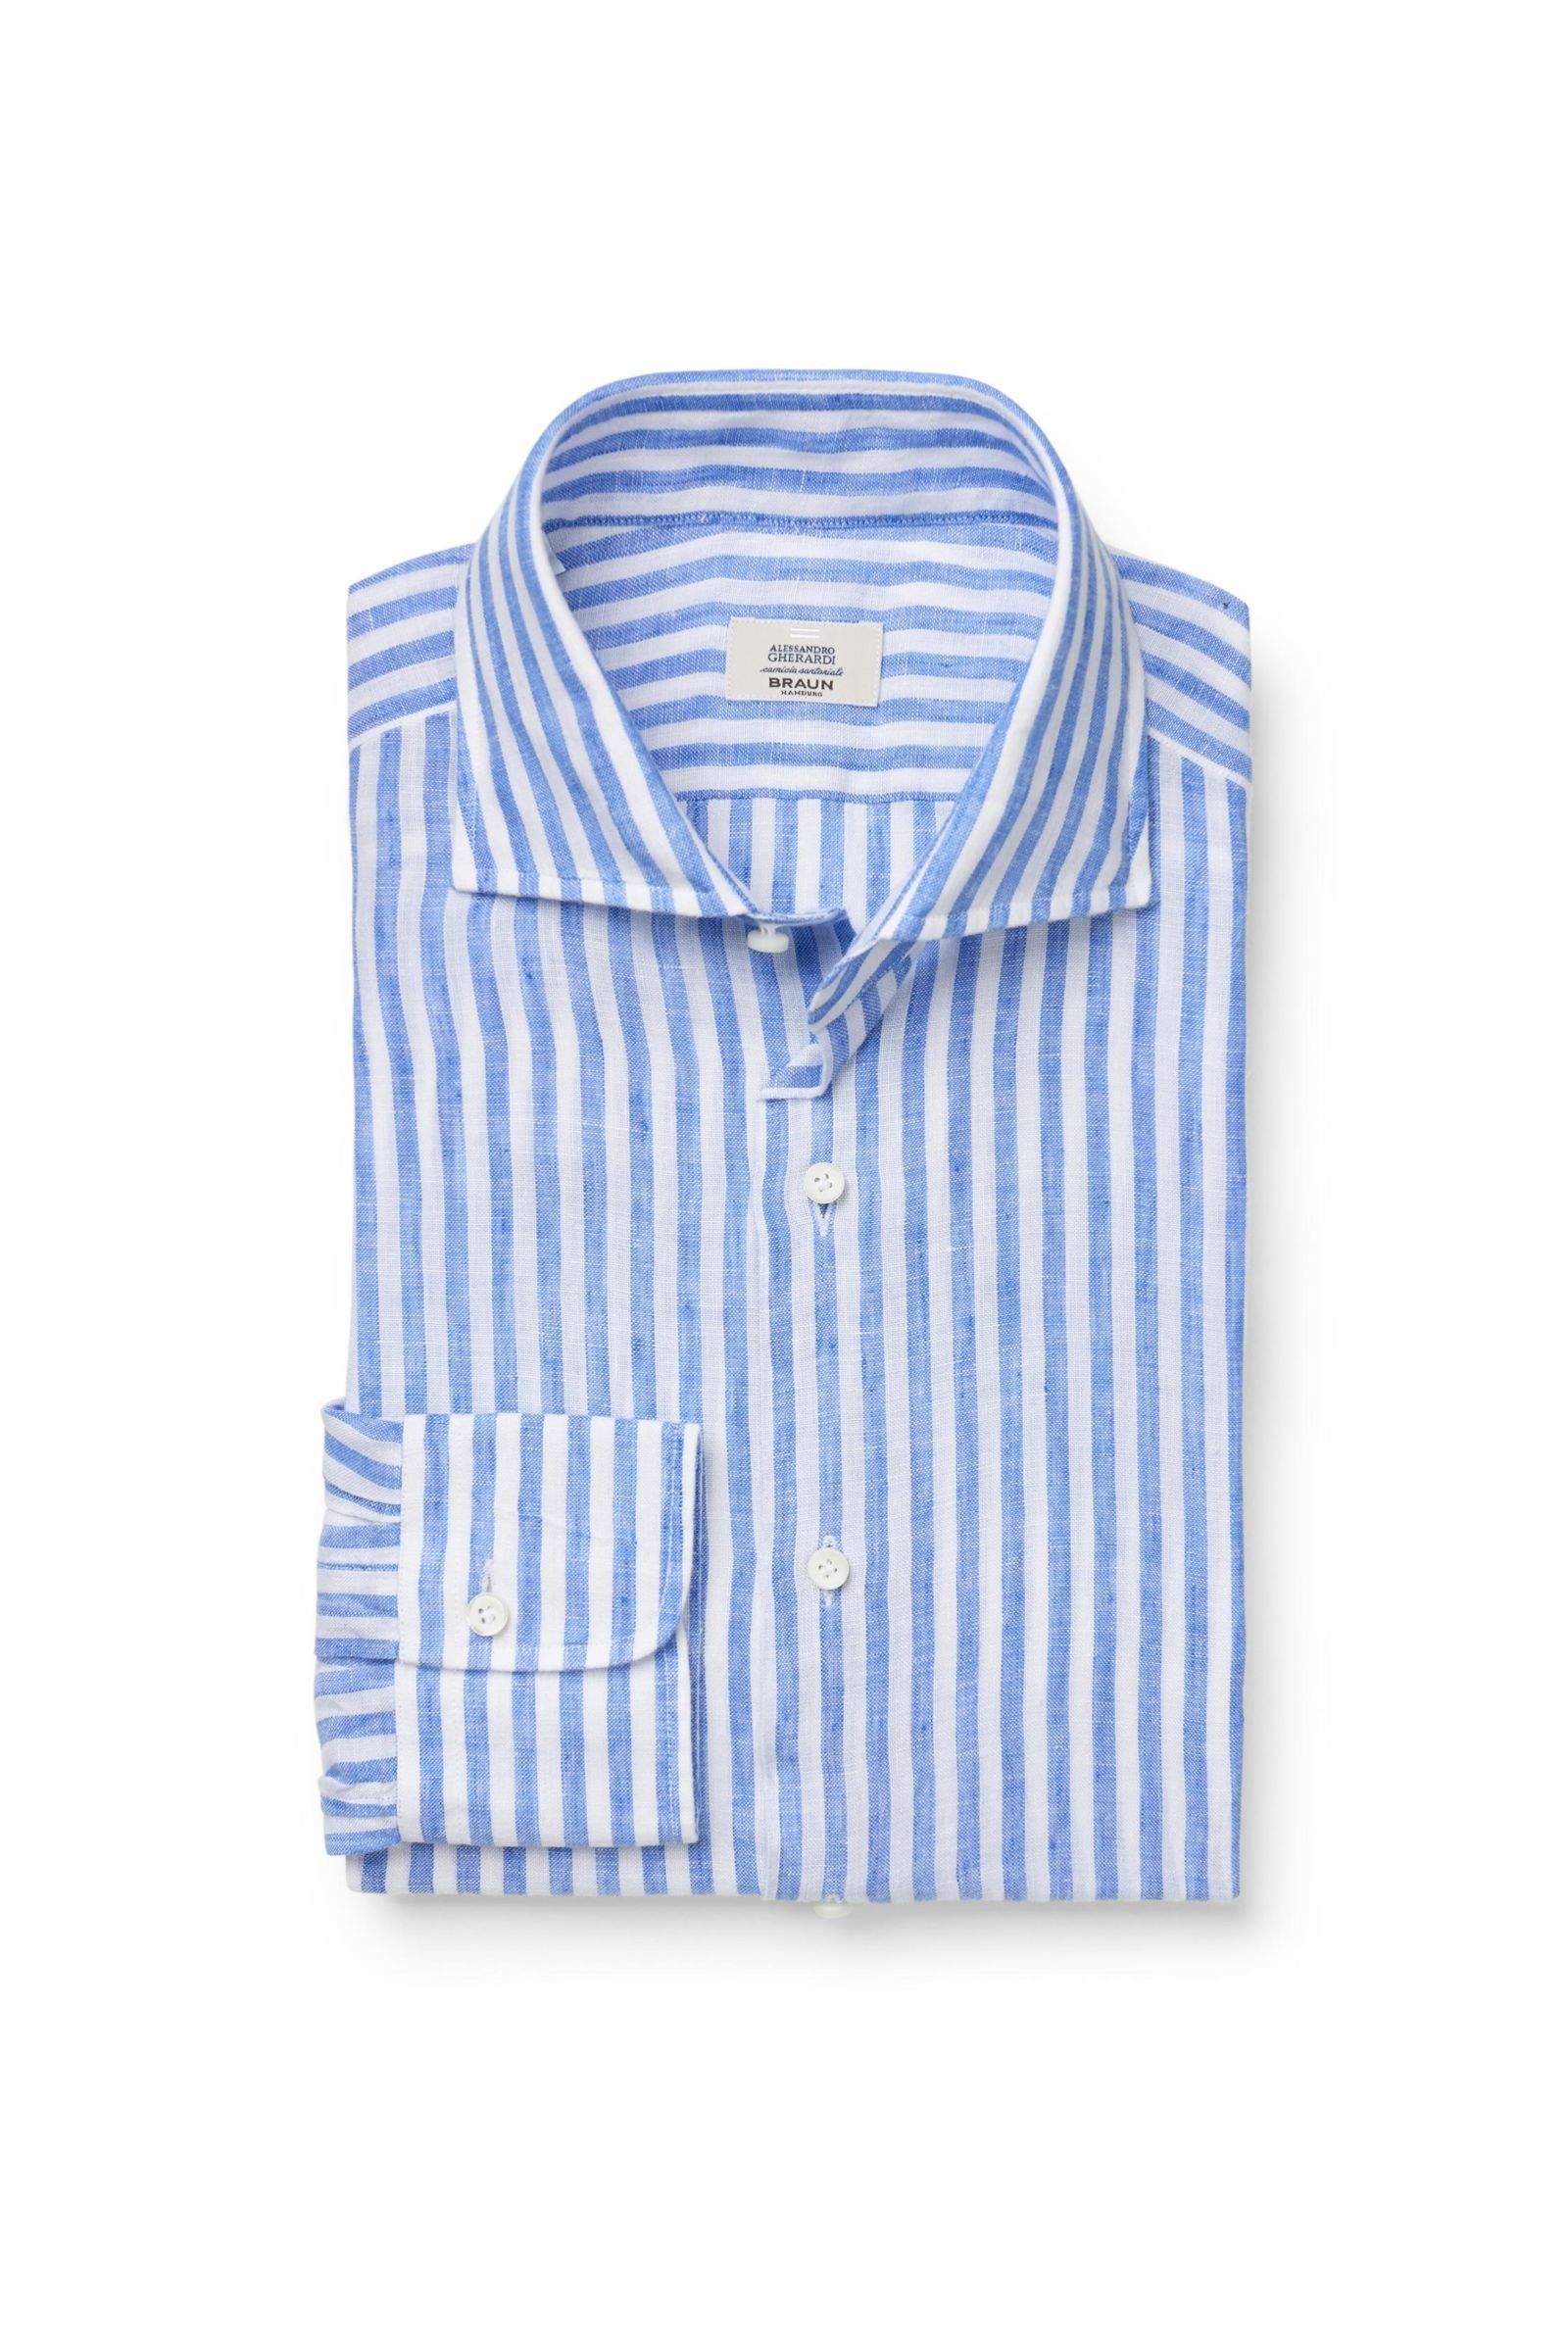 Linen shirt shark collar blue/white striped